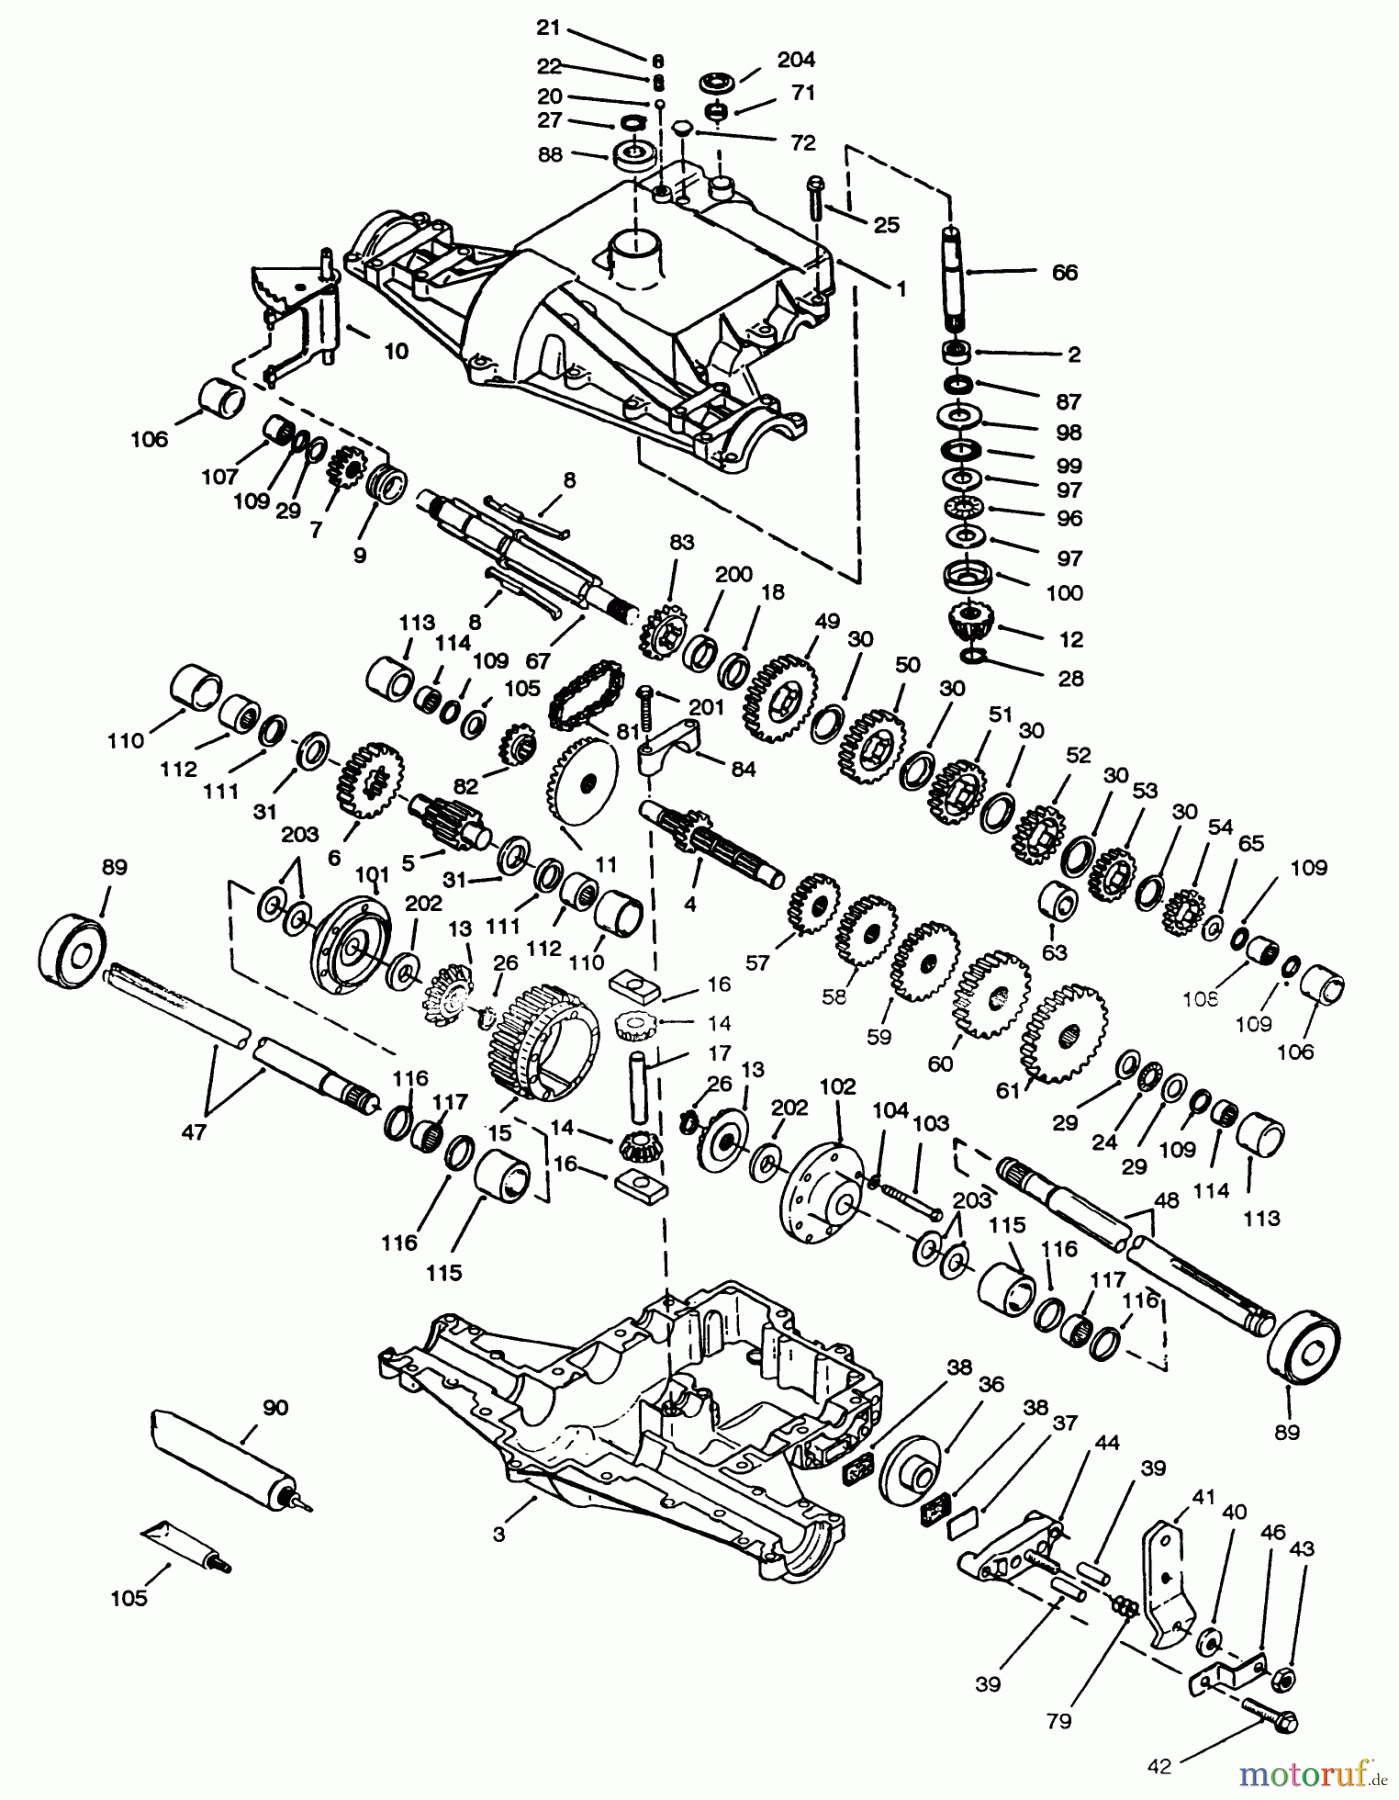  Toro Neu Mowers, Lawn & Garden Tractor Seite 1 72043 (264-H) - Toro 264-H Yard Tractor, 1994 (4900001-4999999) PEERLESS TRANSAXLE 820-024